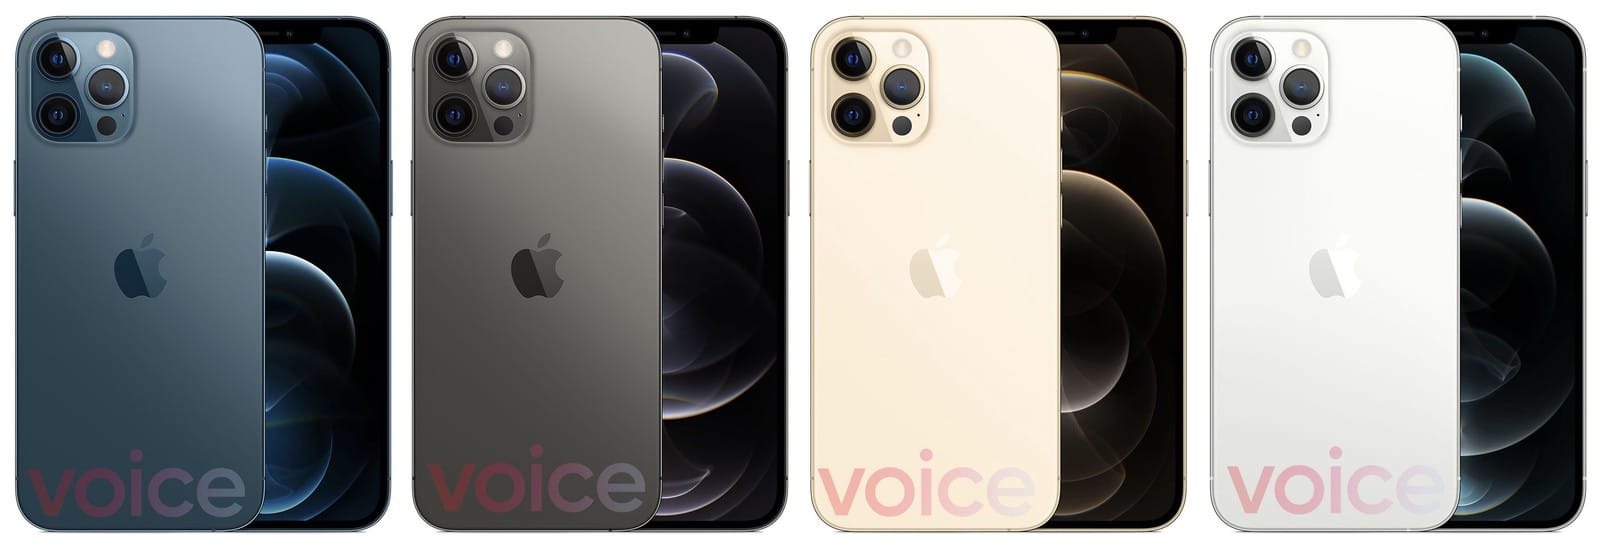 Lộ diện ảnh HomePod Mini và các màu mới của iPhone 12